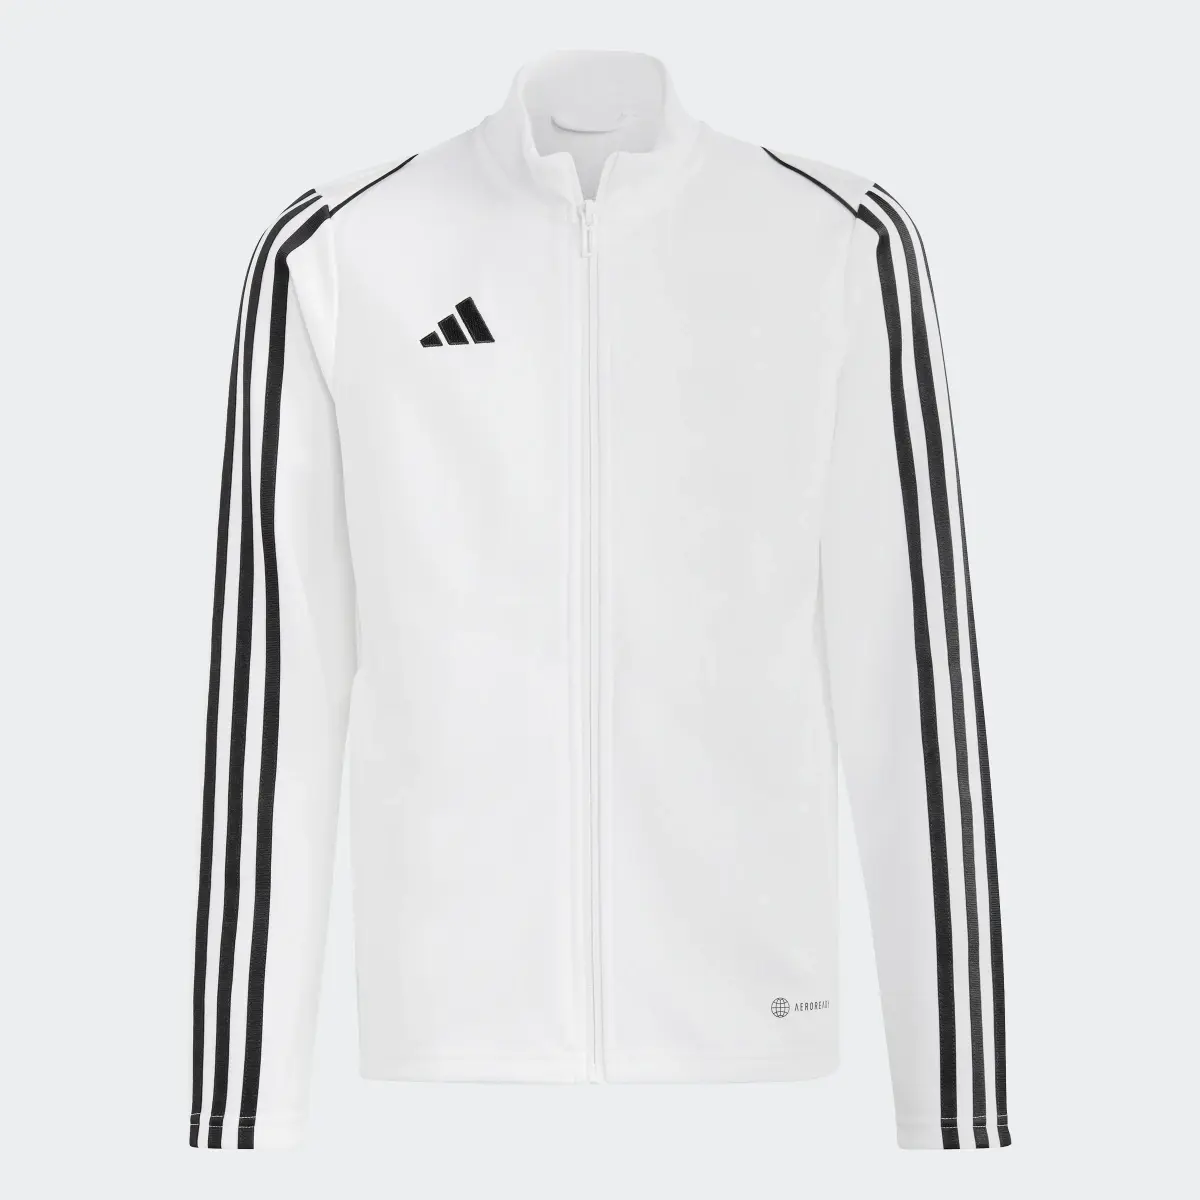 Adidas Tiro 23 League Training Jacket. 3